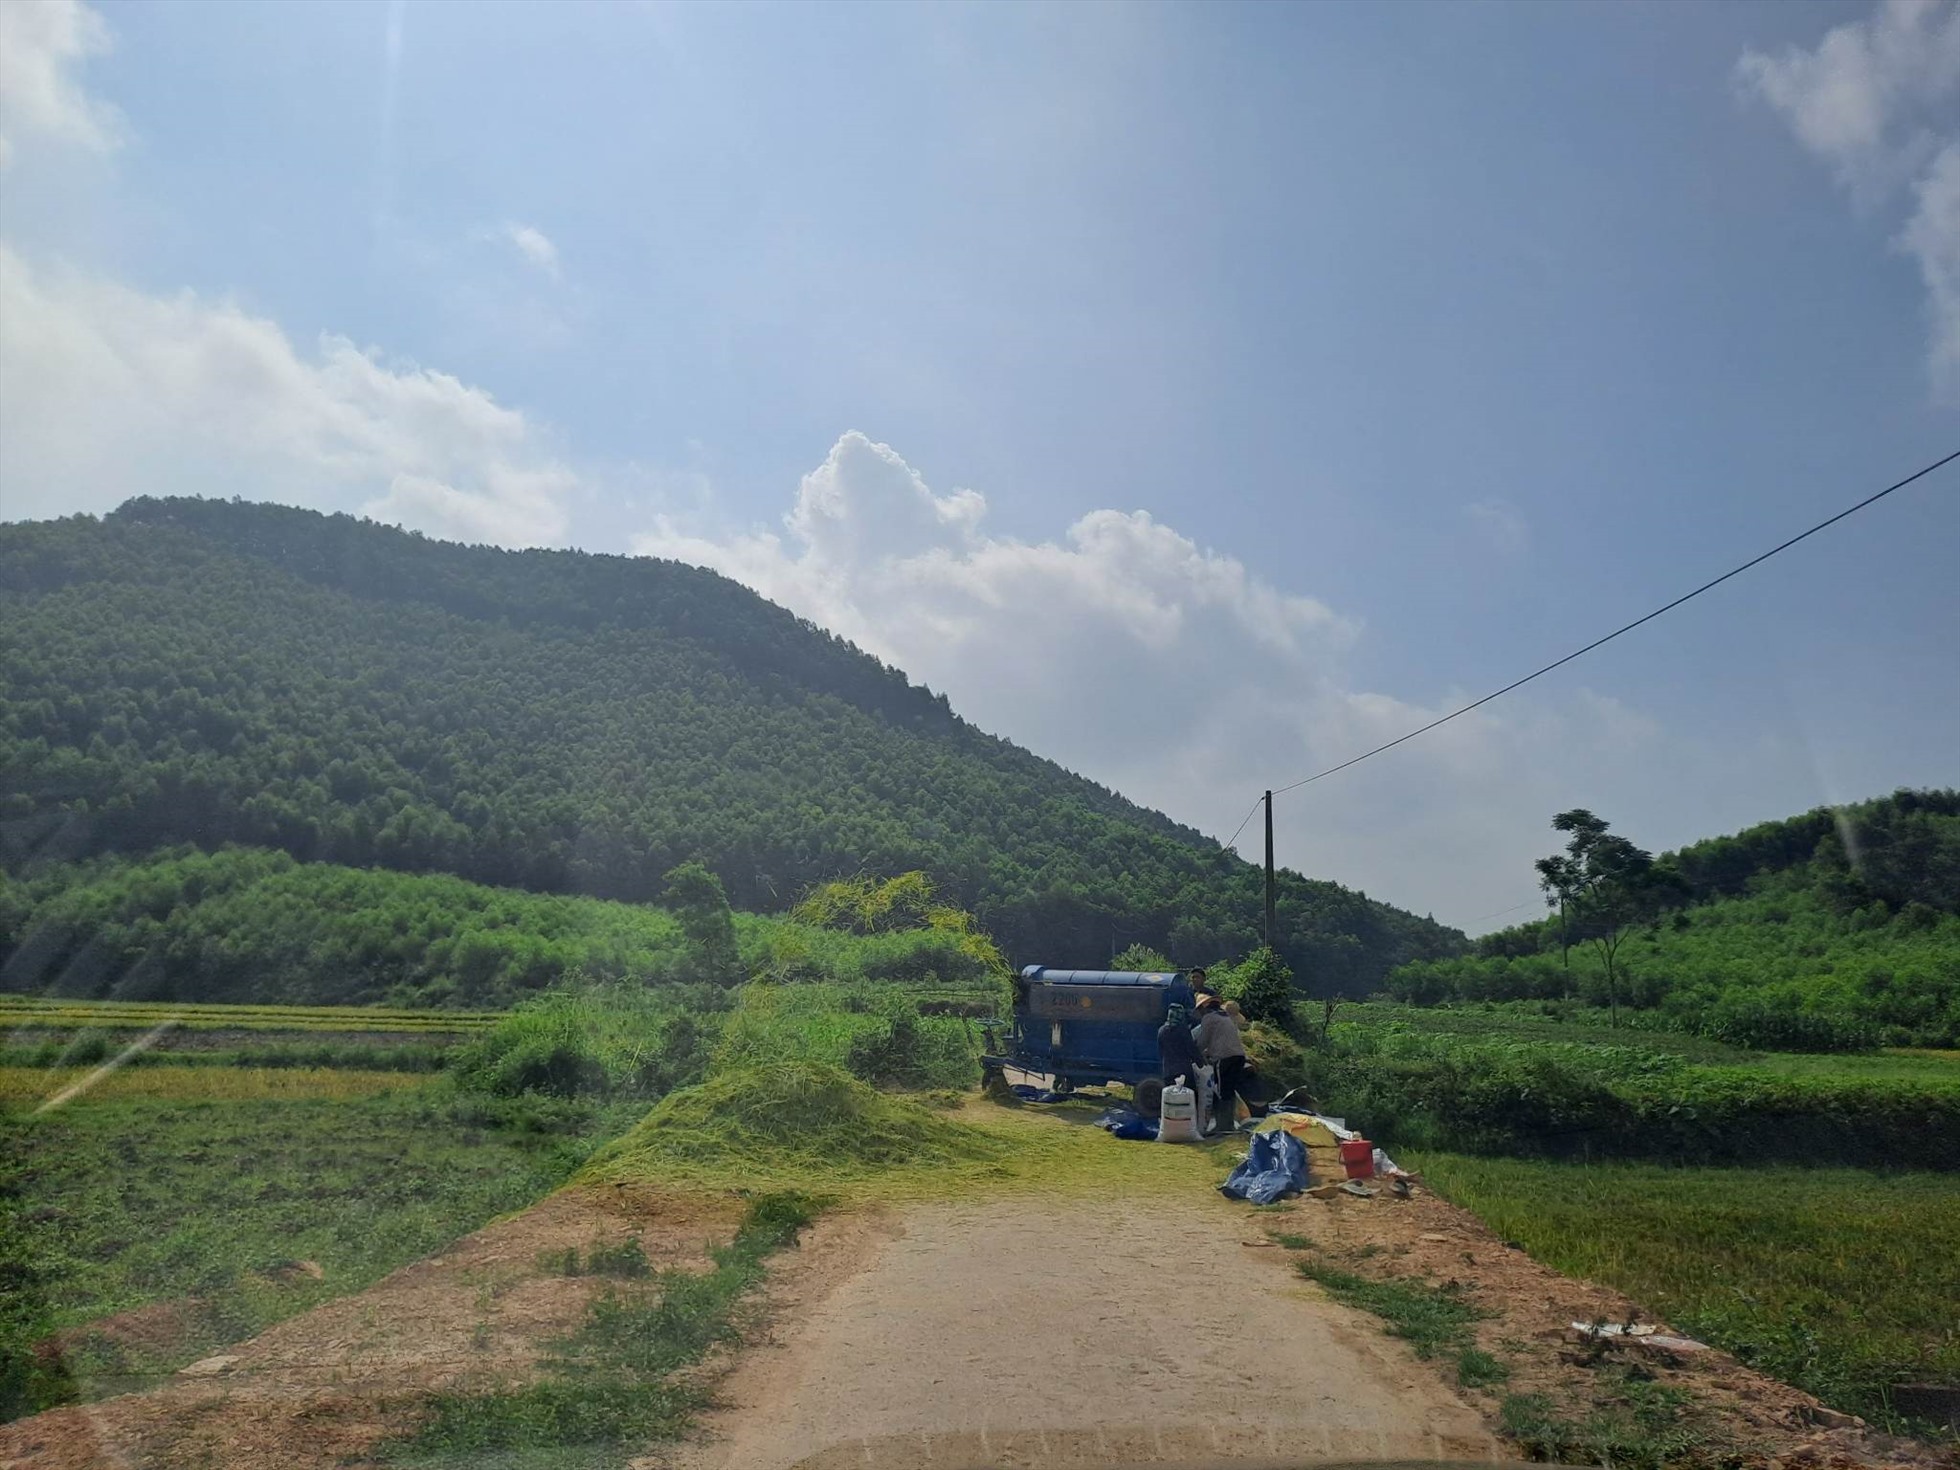 Máy tuốt lúa chắn ngang đường liên xã tại Bình Sơn, TP. Sông Công, Thái Nguyên. Ảnh: Minh Hạnh